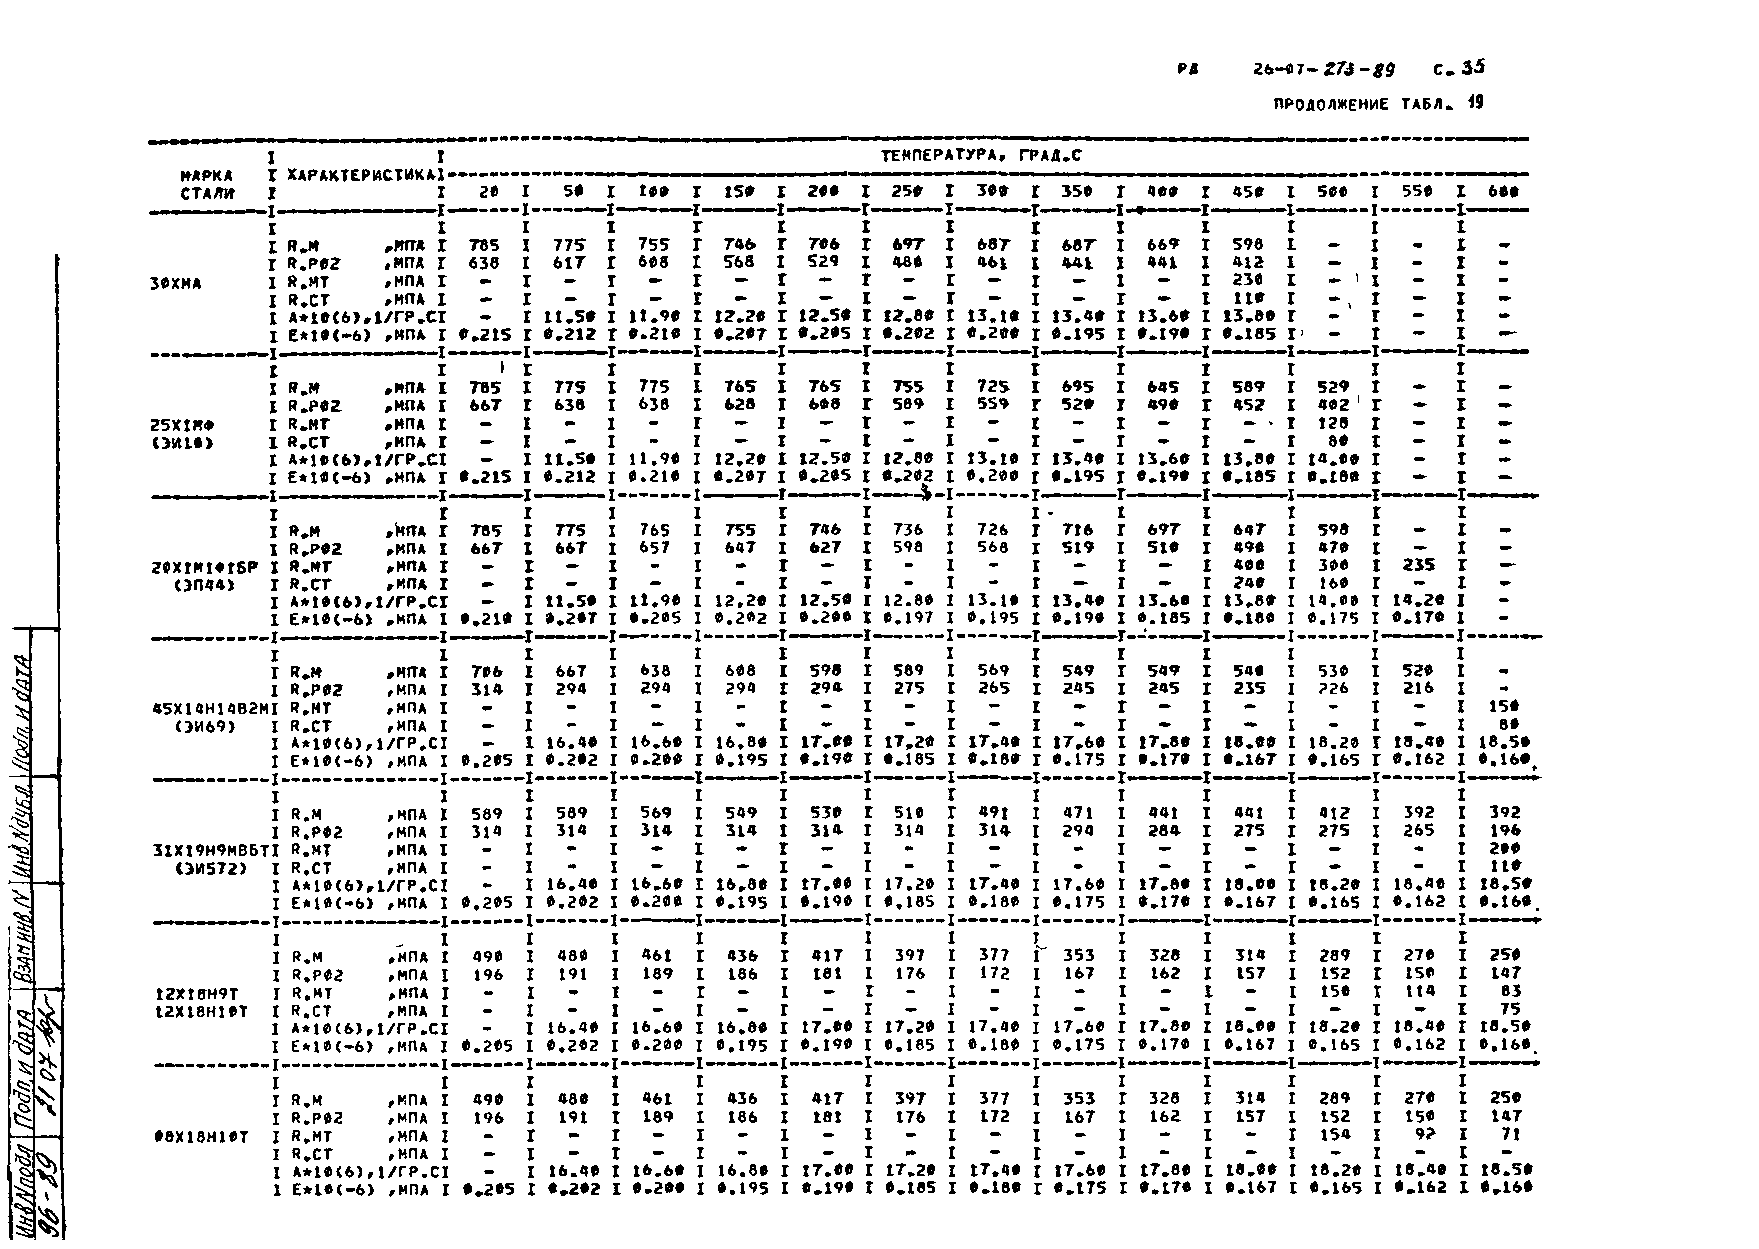 РД 26-07-273-89